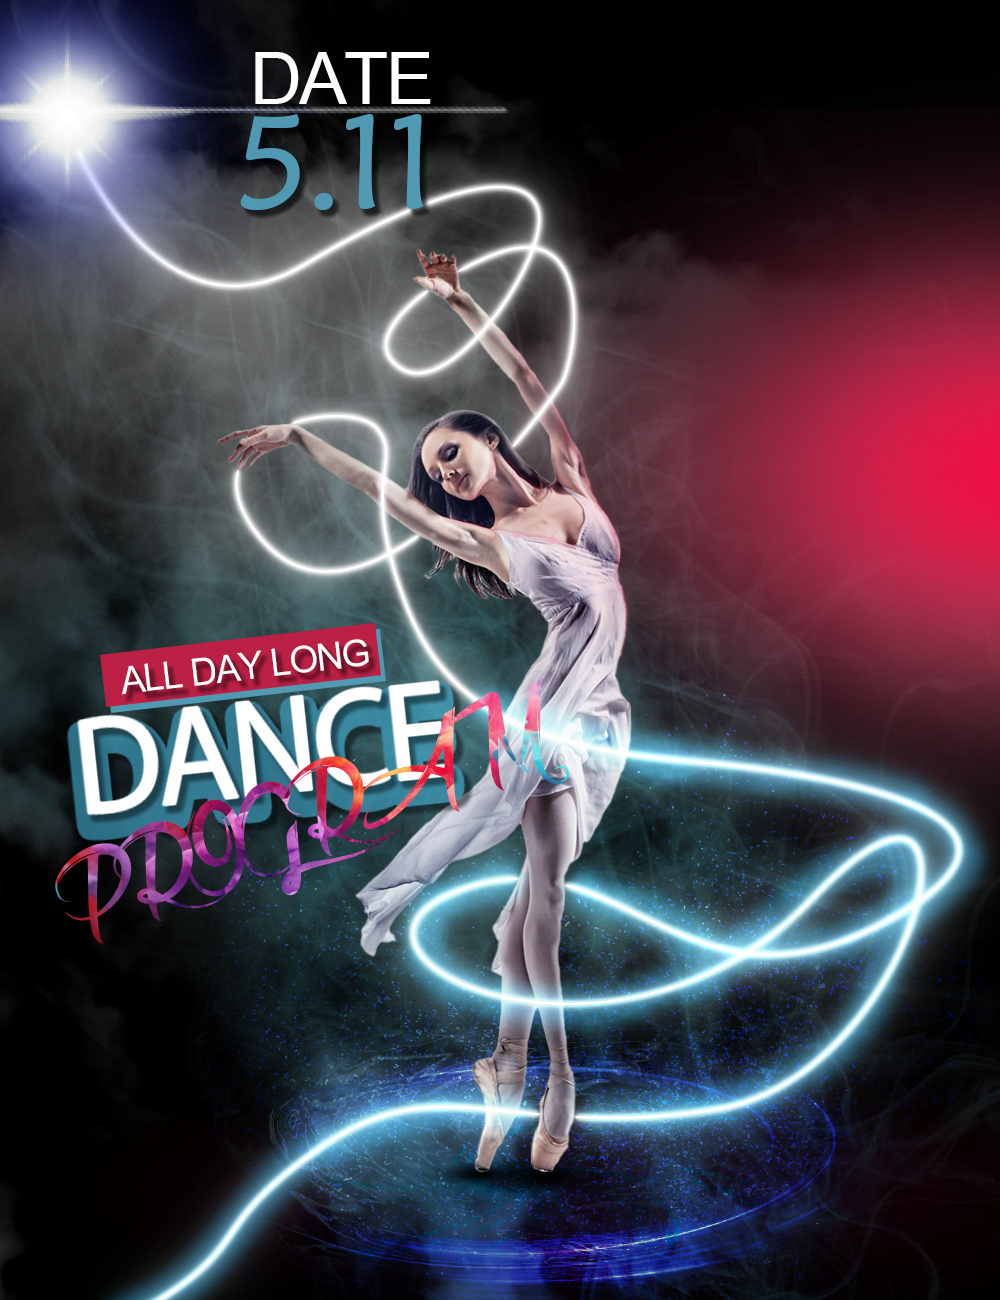 DANCE   poster design Graphic Designer Poster Design poster art adobe illustrator Social media post Advertising  marketing  